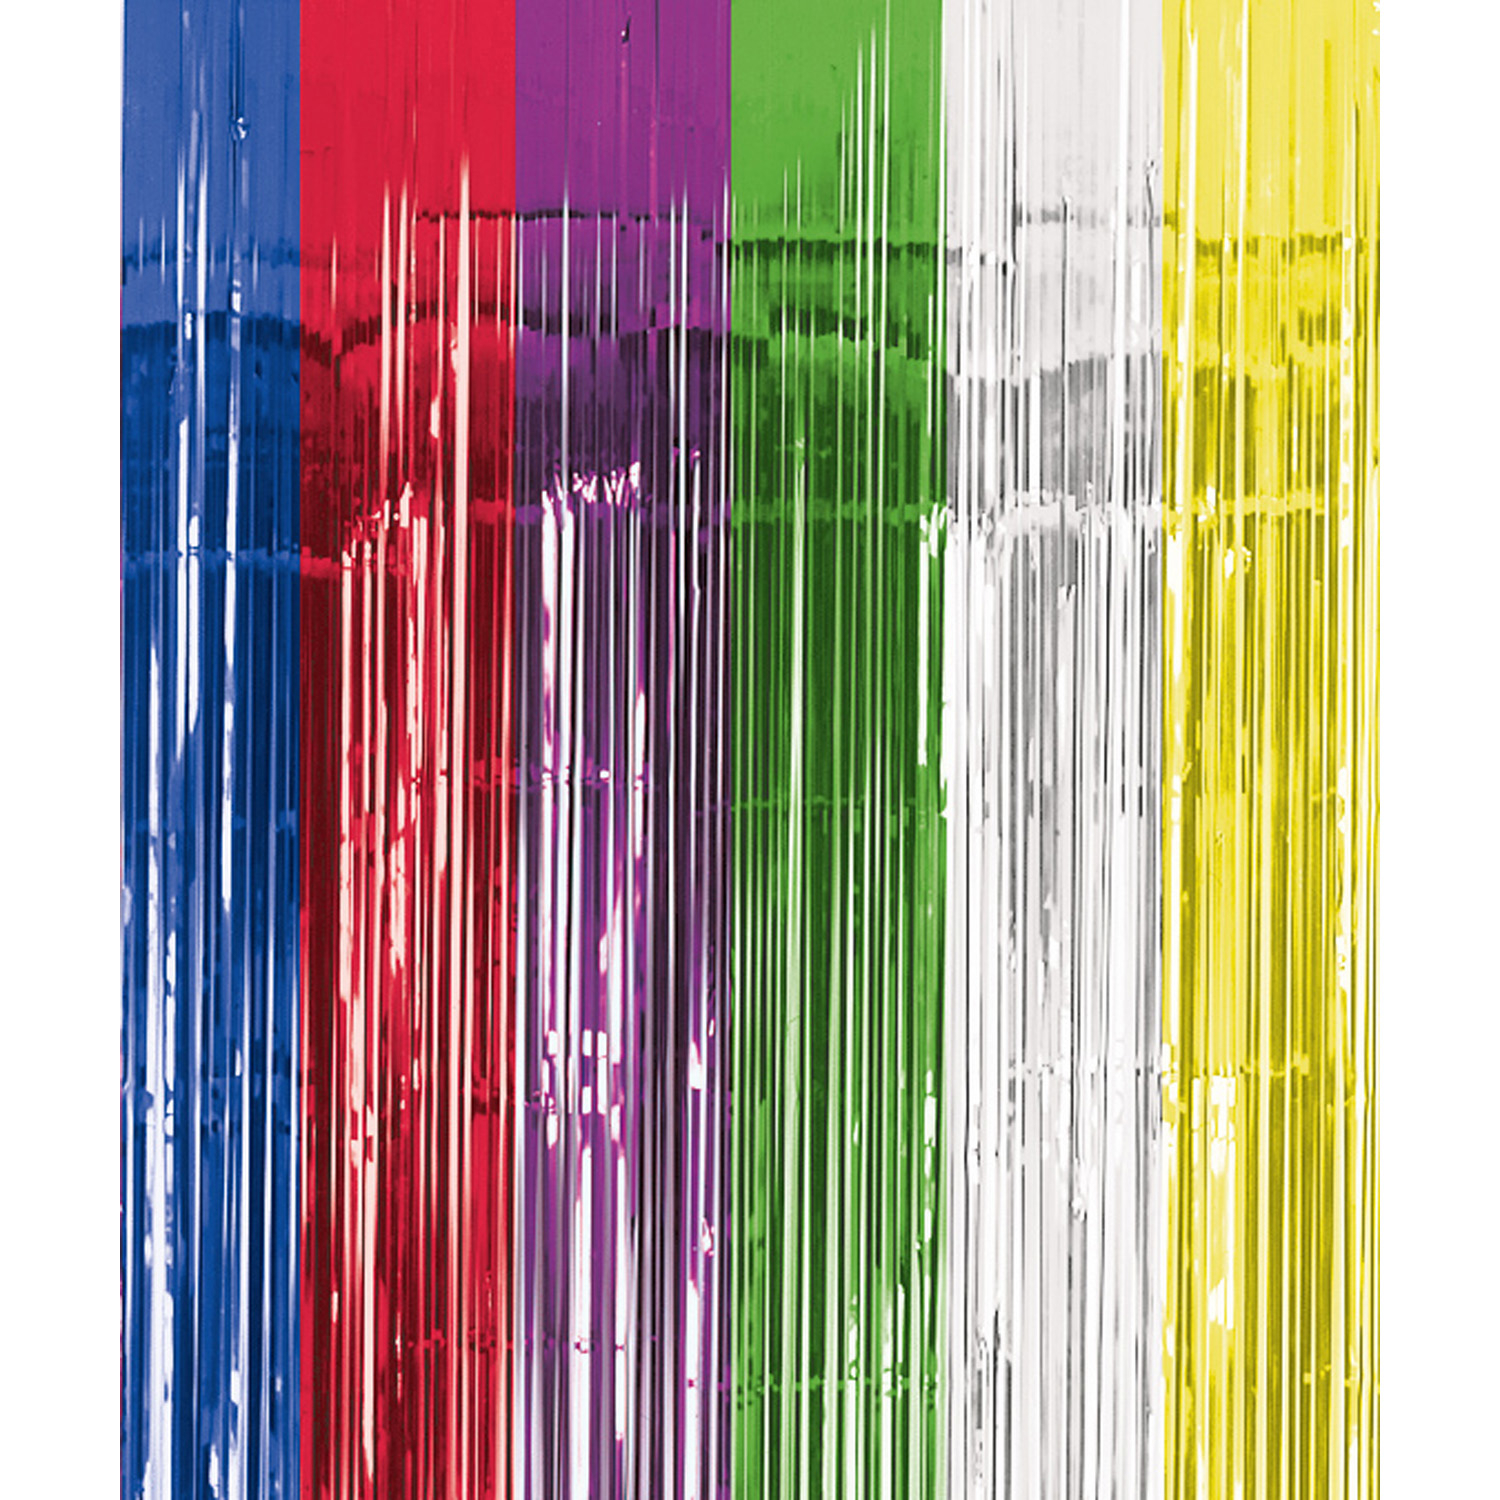 Závěsná dekorace barevná 243 cm x 91 cm